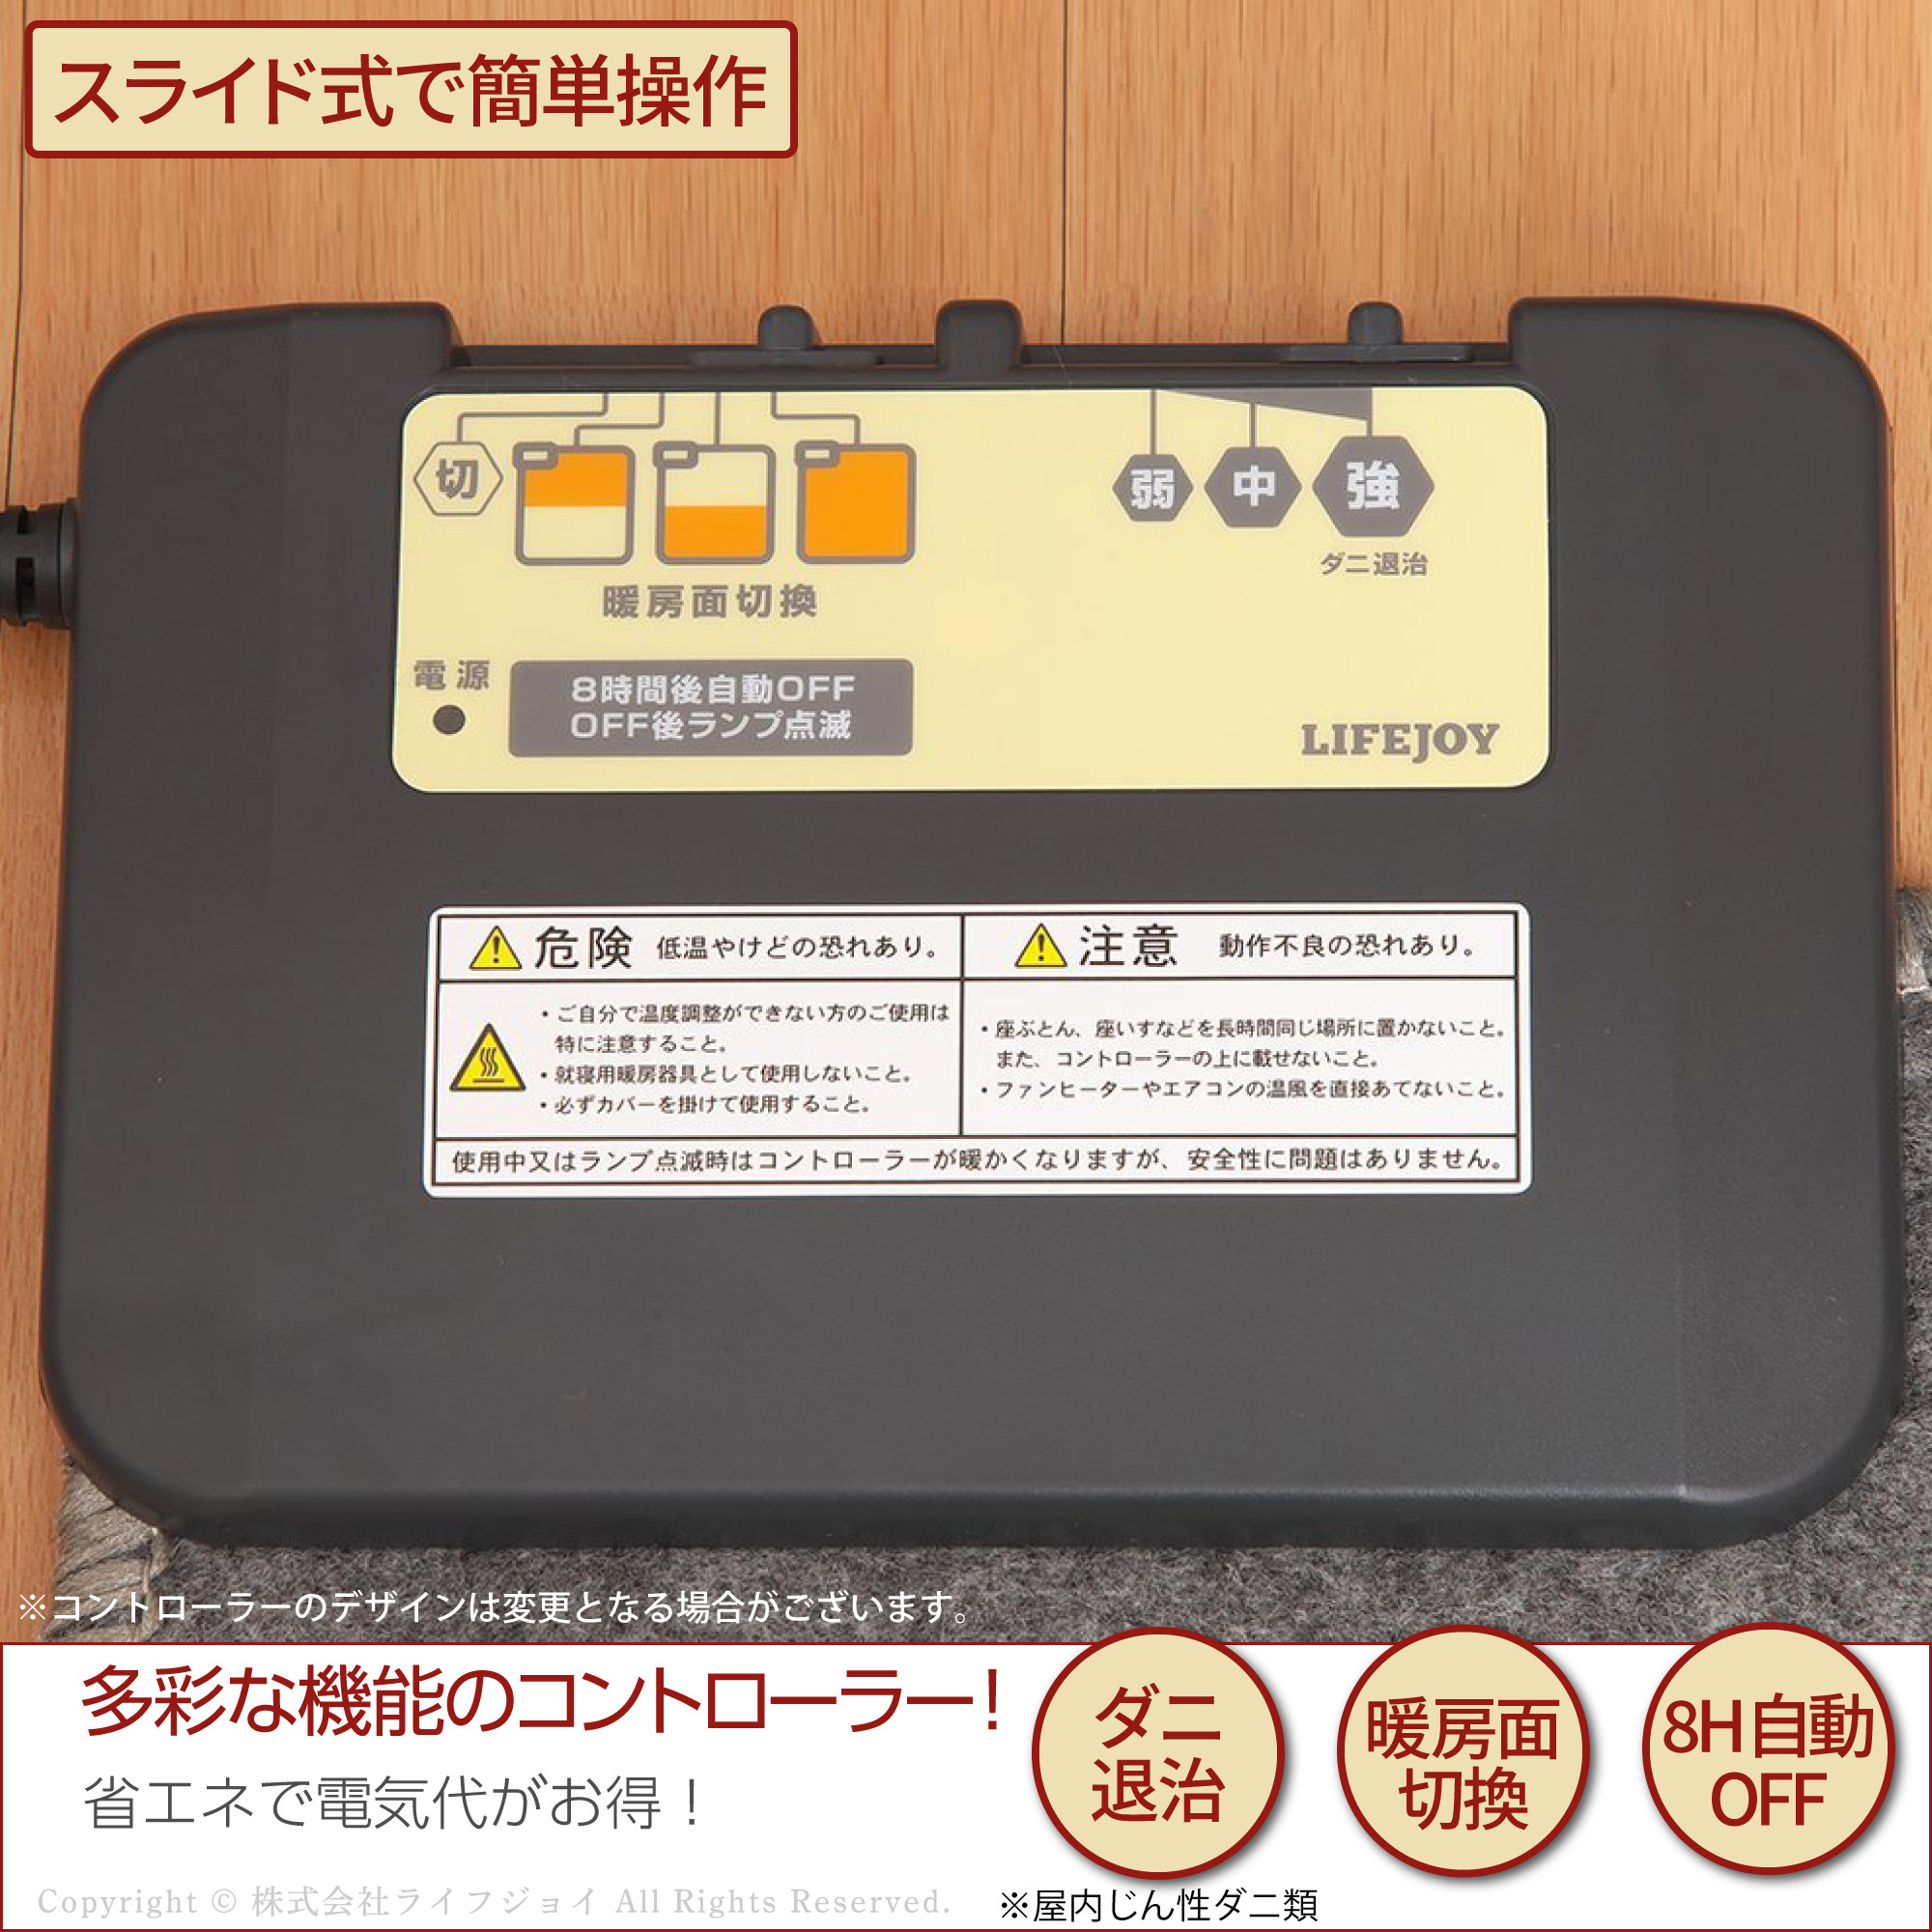 日本製 ホットカーペット 290cm×195cm 4畳 本体 暖房面切換 8時間OFF